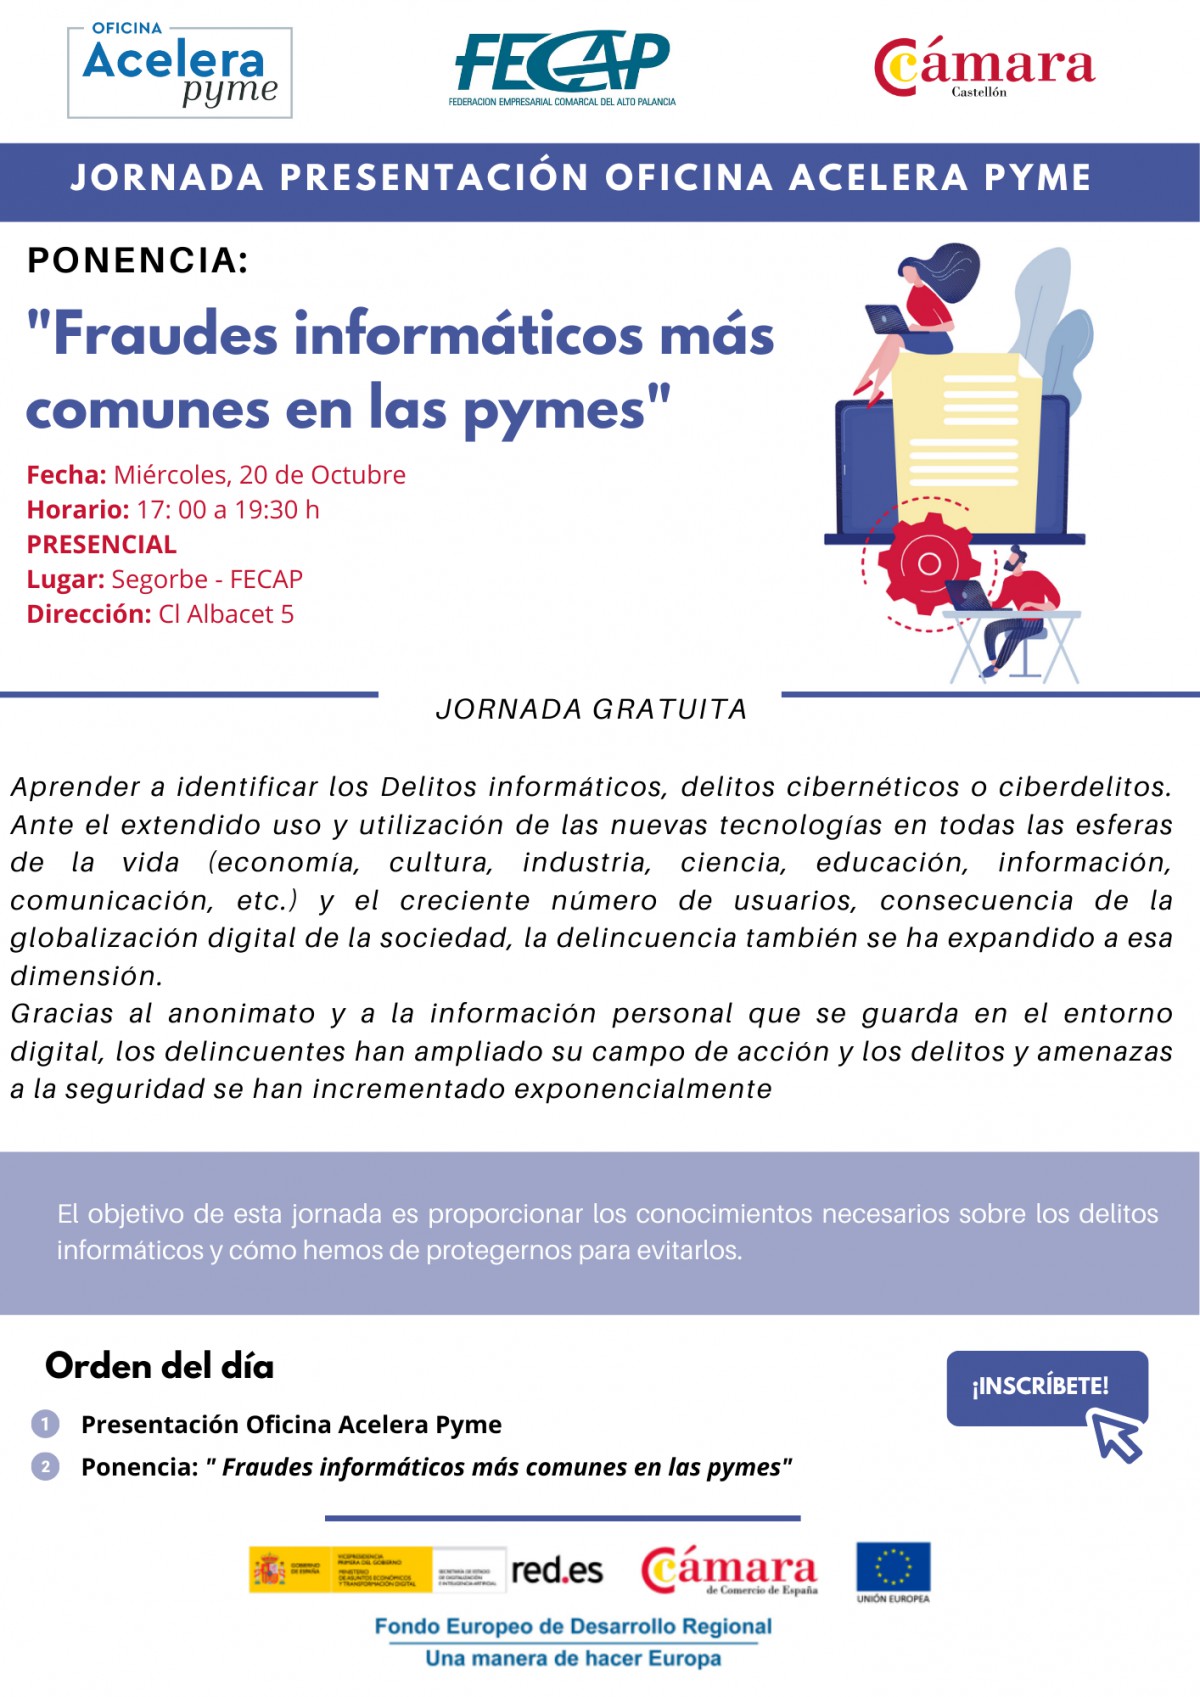 JORNADA PRESENTACIÓ OFICINA ACCELERA PIME - PONÈNCIA "FRAUS INFORMÀTICS MÉS COMUNS EN LES PIME"